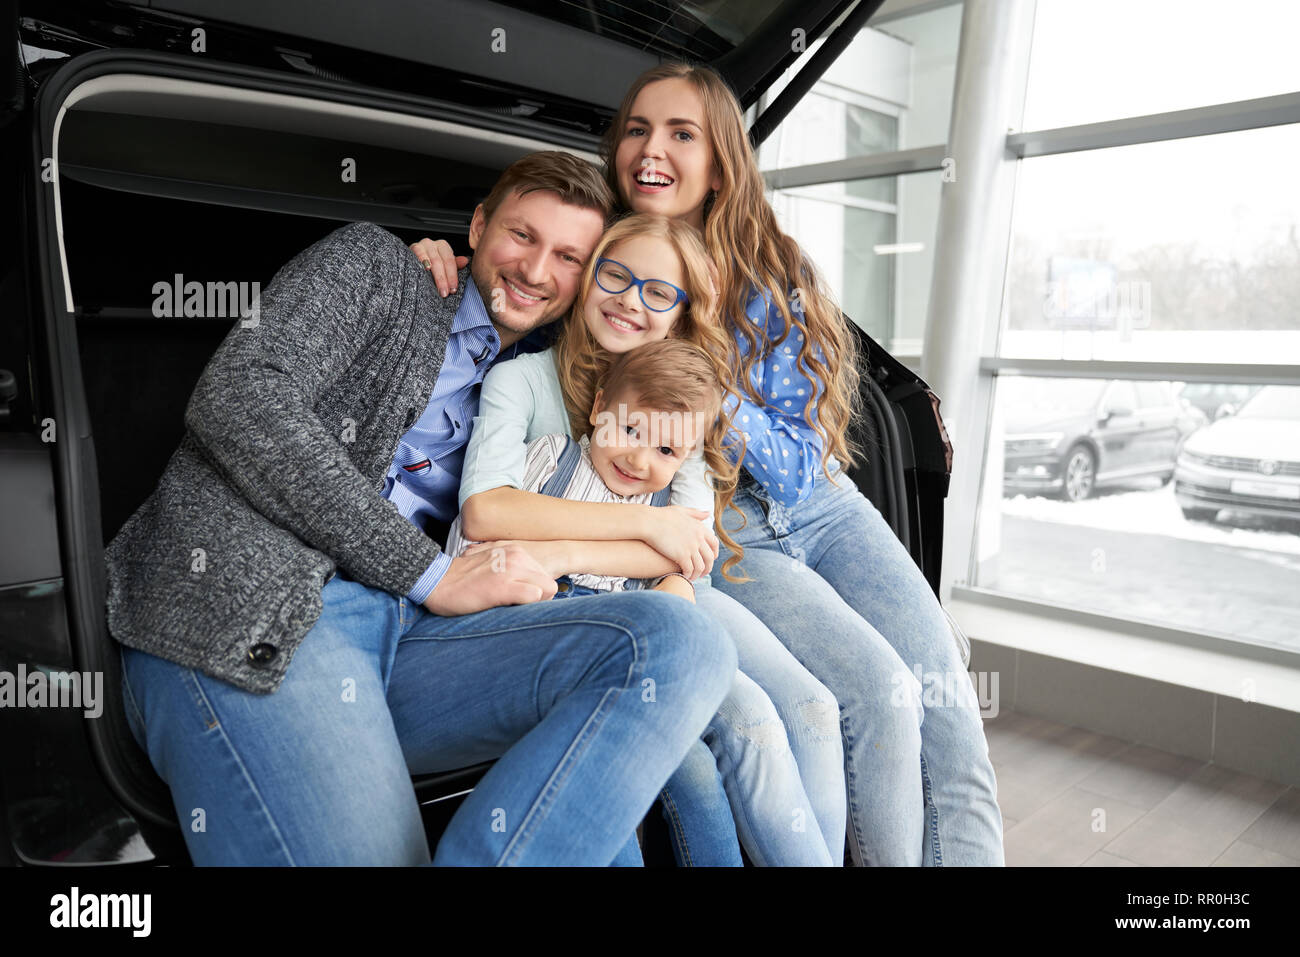 Ziemlich Familie sitzt im Kofferraum von schwarzen Automobil und posieren. Personen, die das Fahrzeug. Glückliche Eltern umarmt Kinder, Sohn und Tochter, von der Kamera schauen und lächeln. Stockfoto